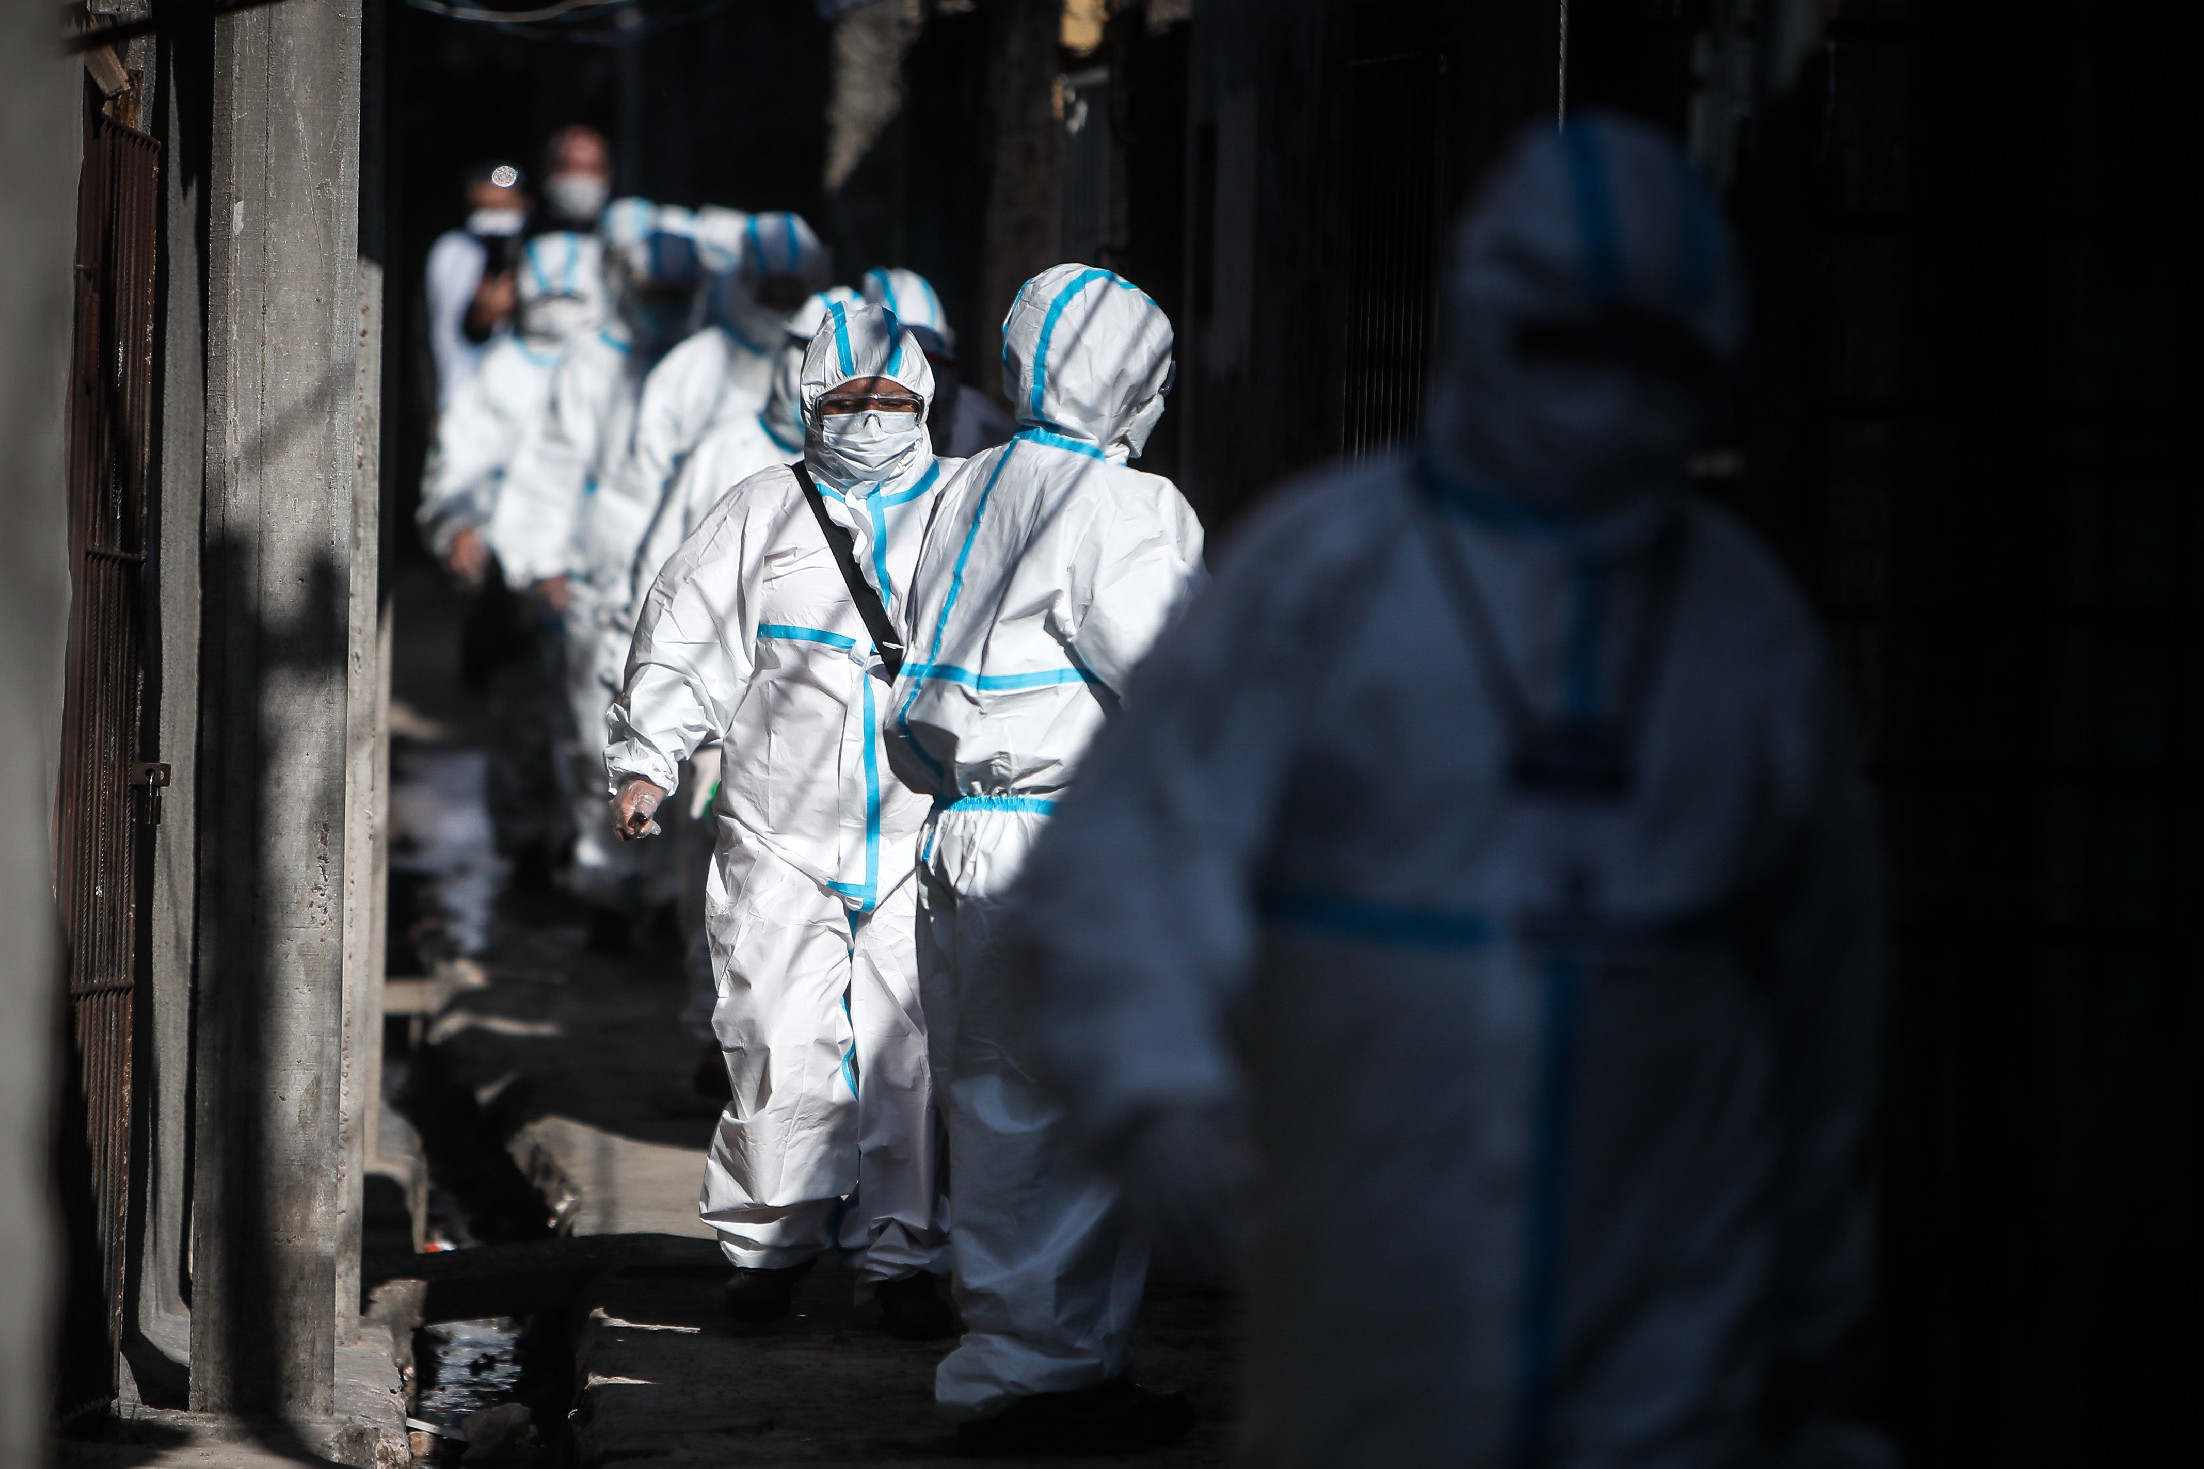 Rejtélyes járvány fertőz – hárman már meghaltak